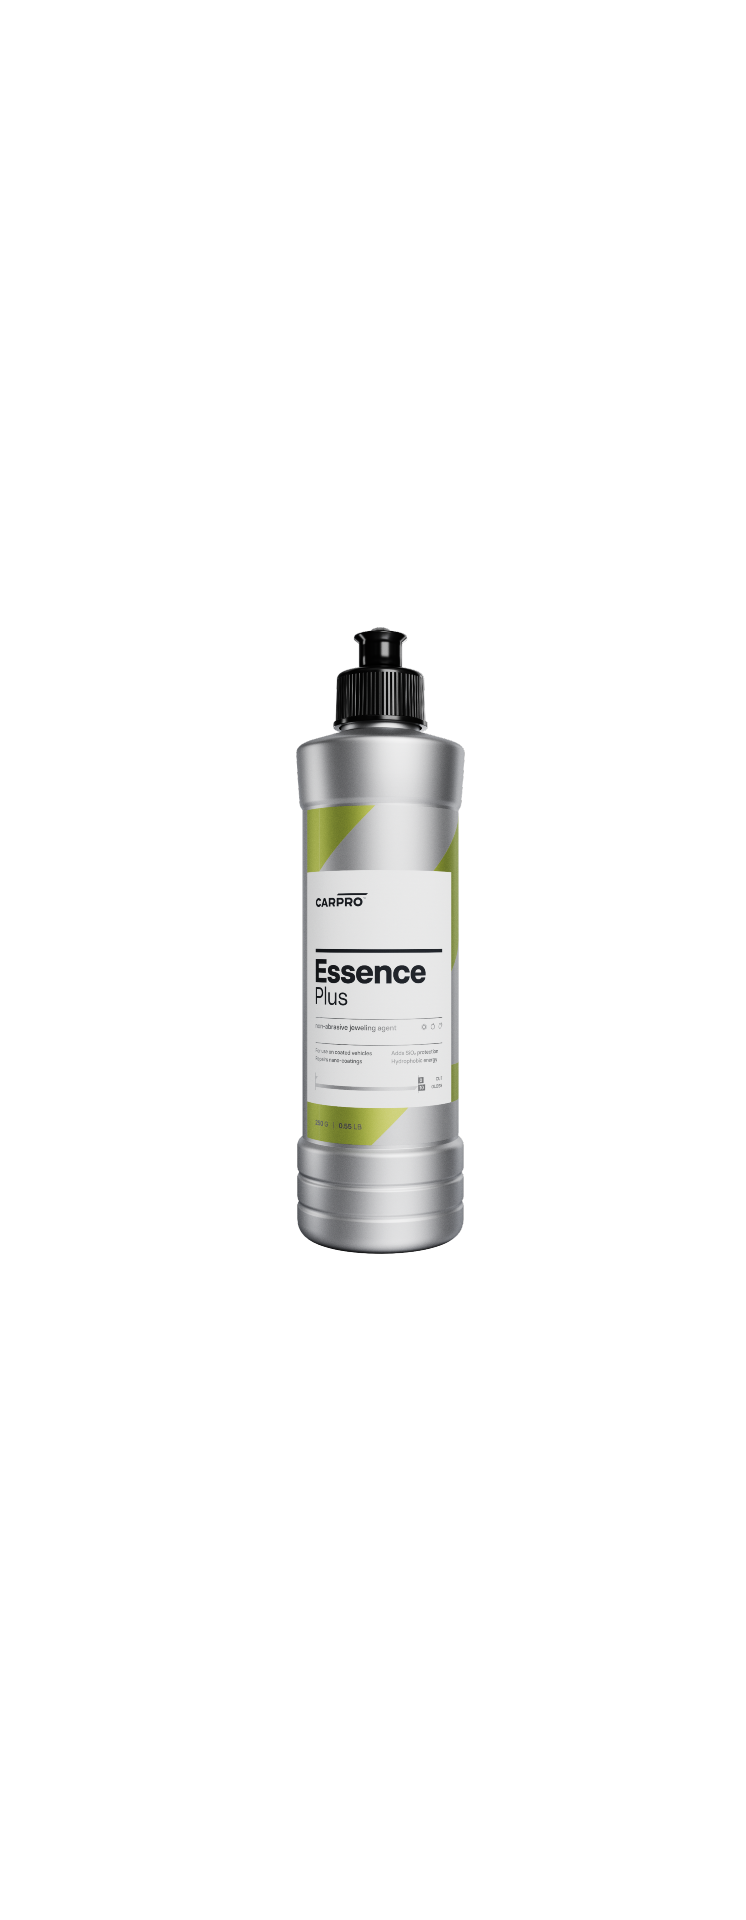 Essence+ – Nanoteknologisk försegling med hydrofobiska egenskaper.